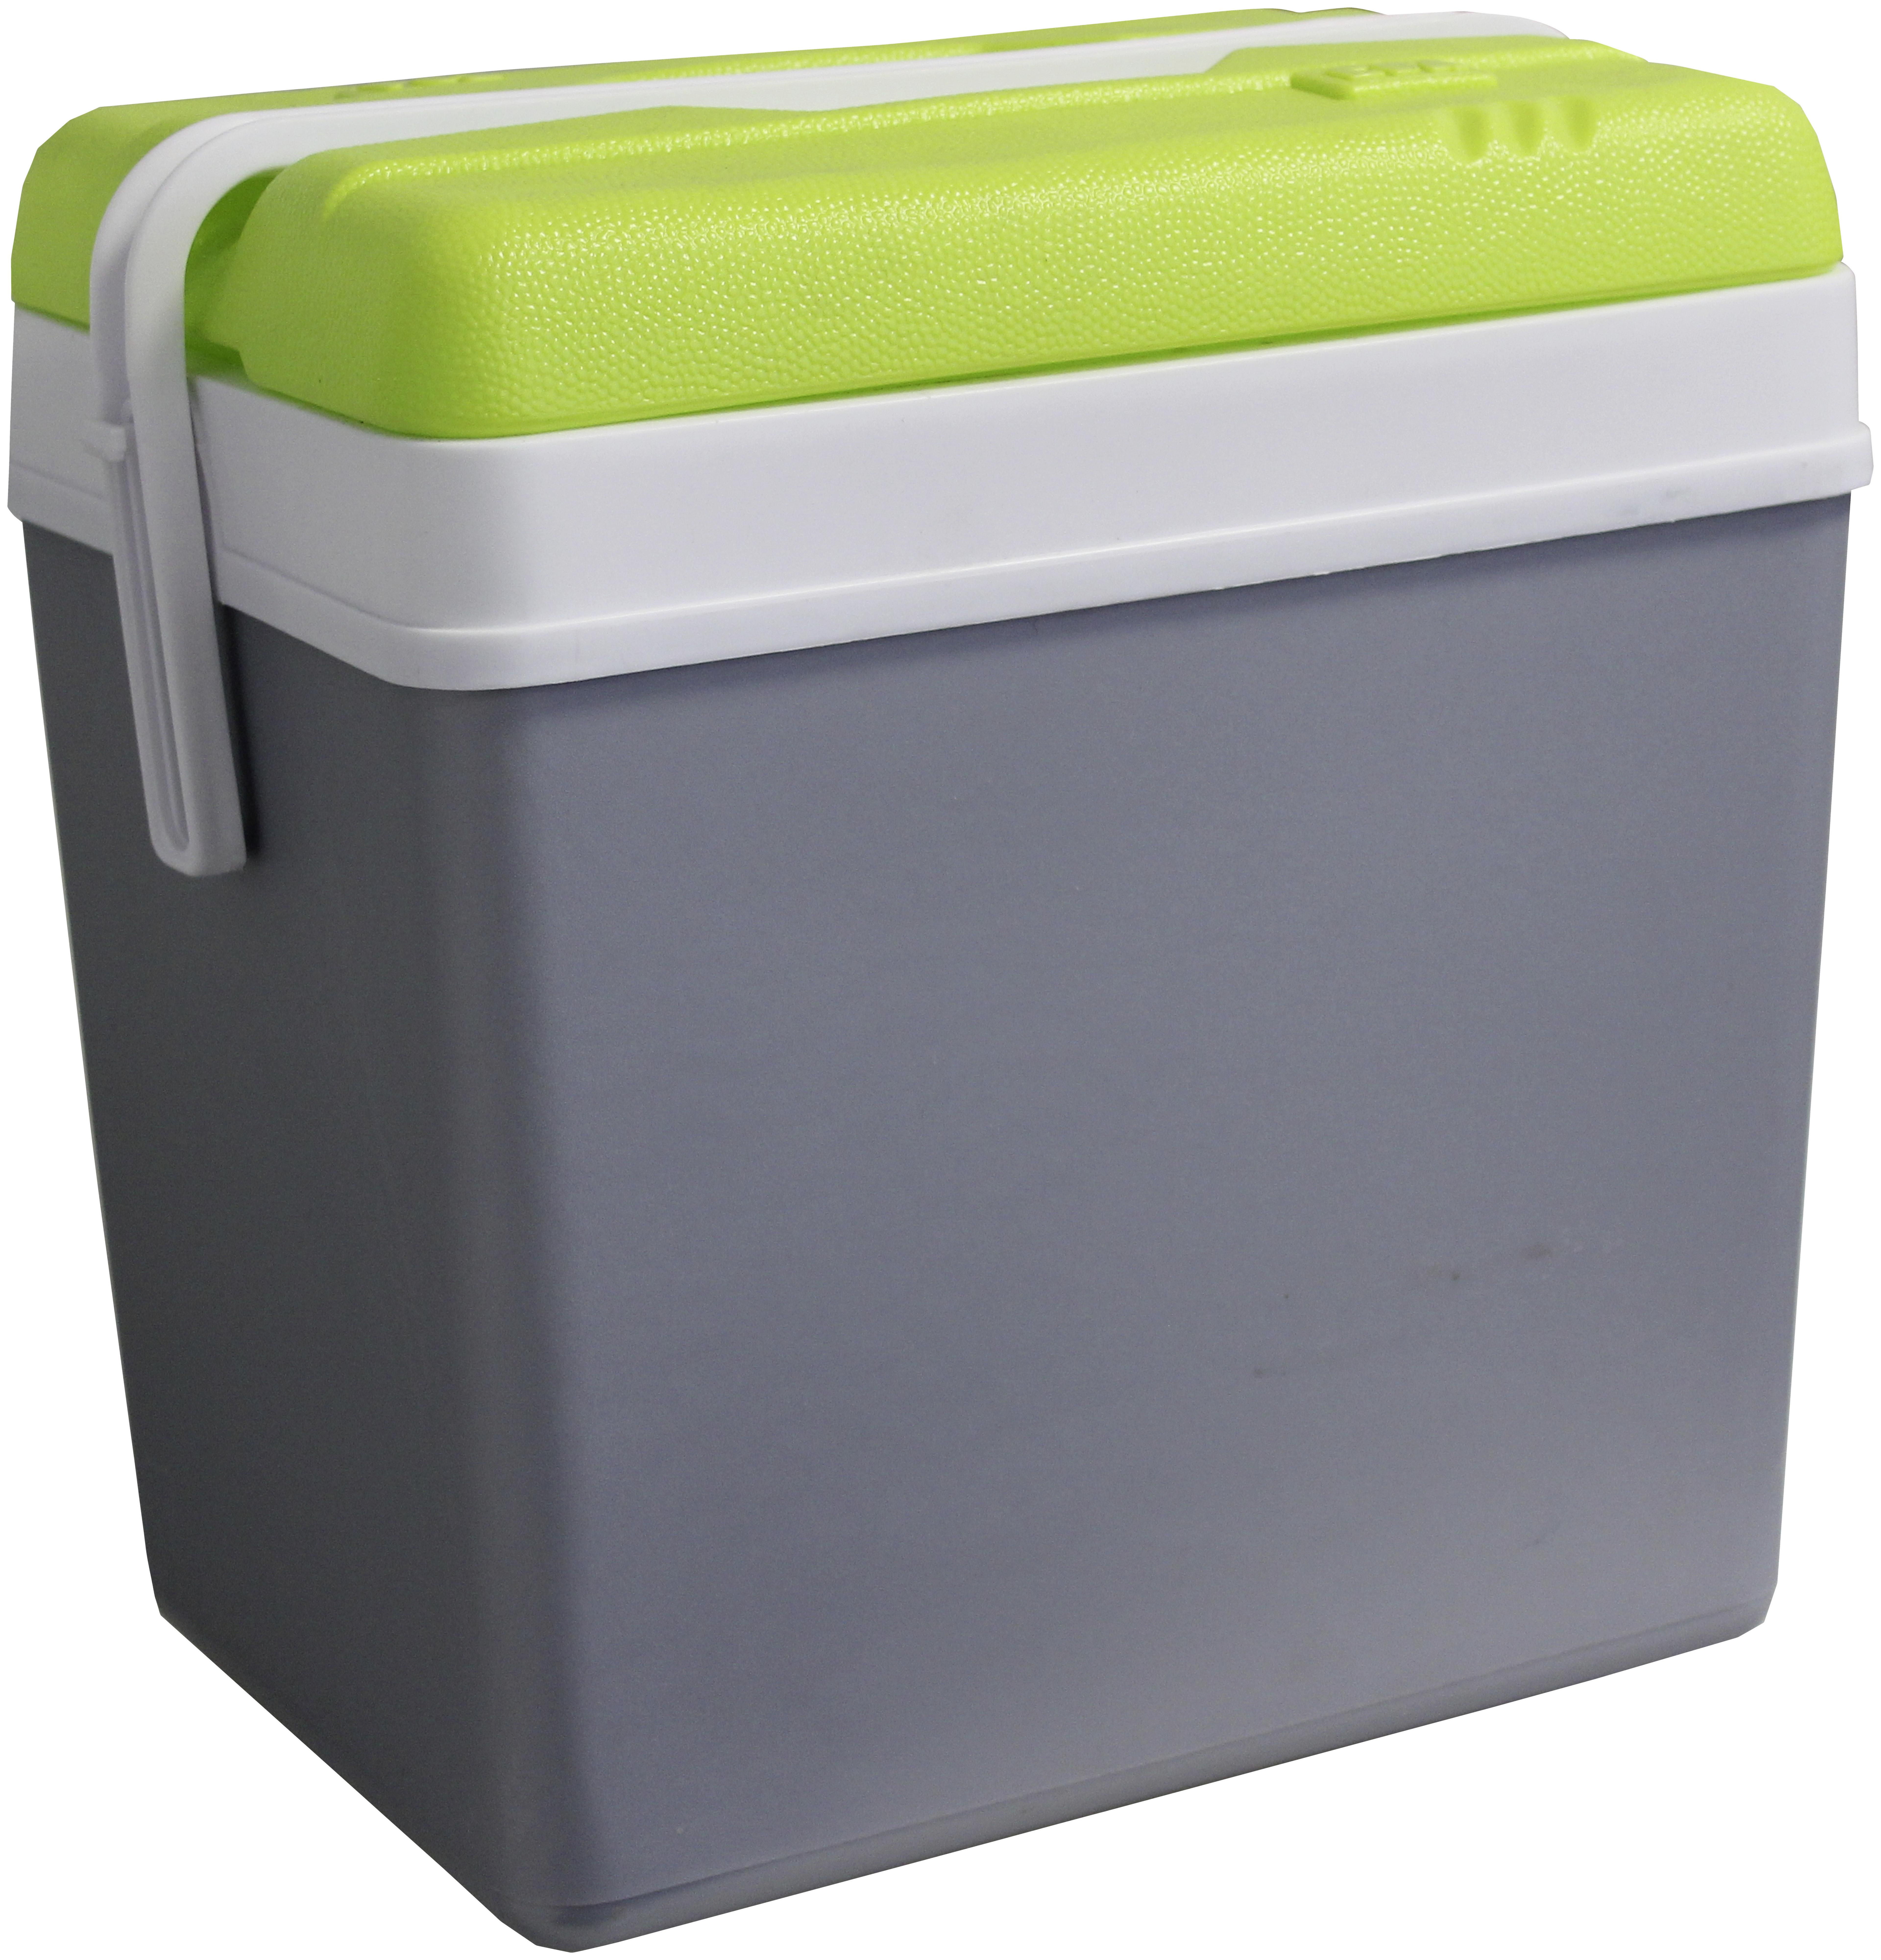 Kühlbox 24 Liter, Grau/Grün